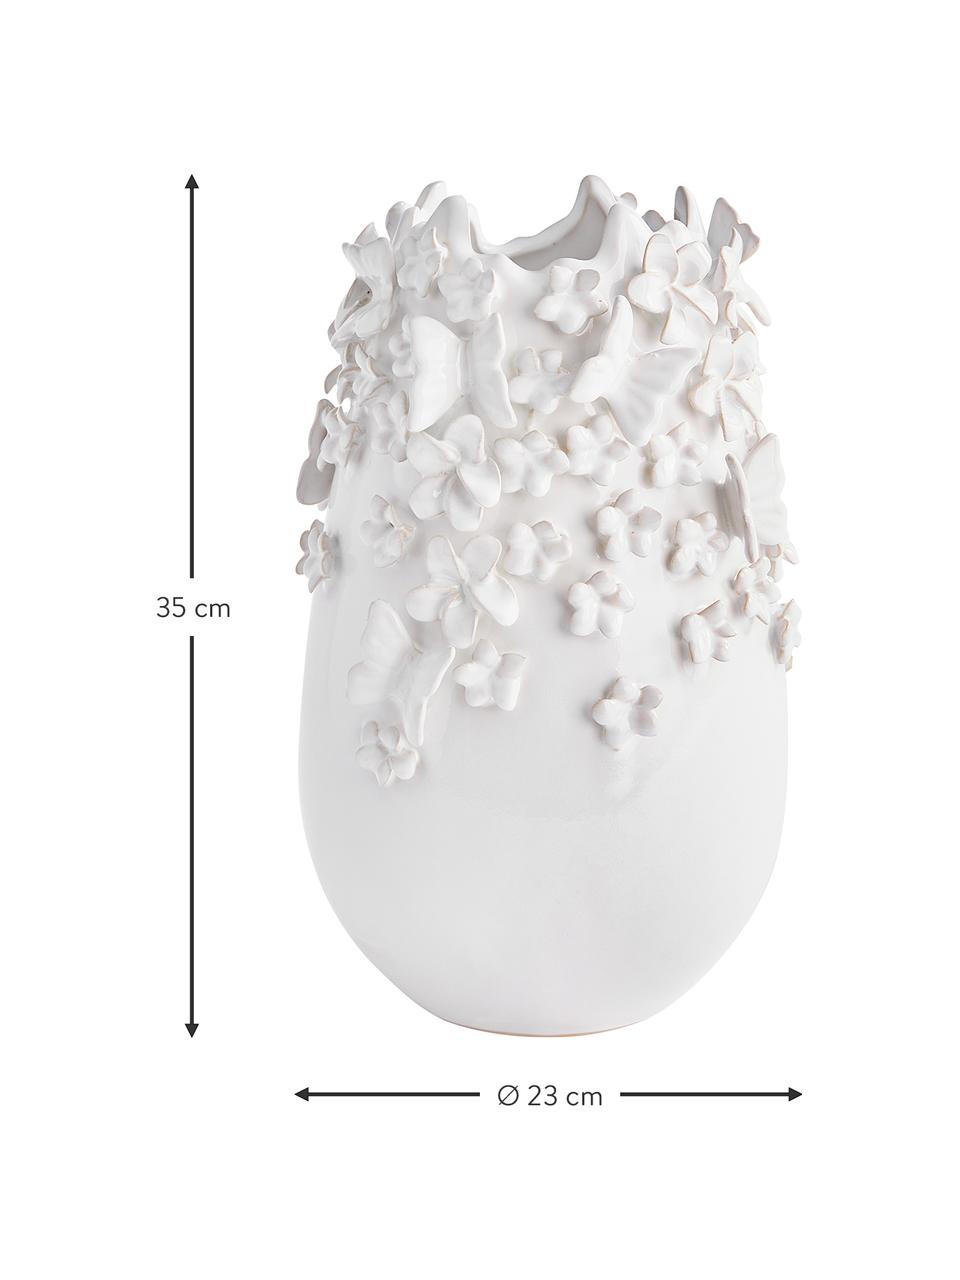 Steingut-Vase Daphne mit 3D-Verzierung, Steingut, lackiert, Weiß, Ø 23 cm x H 35 cm